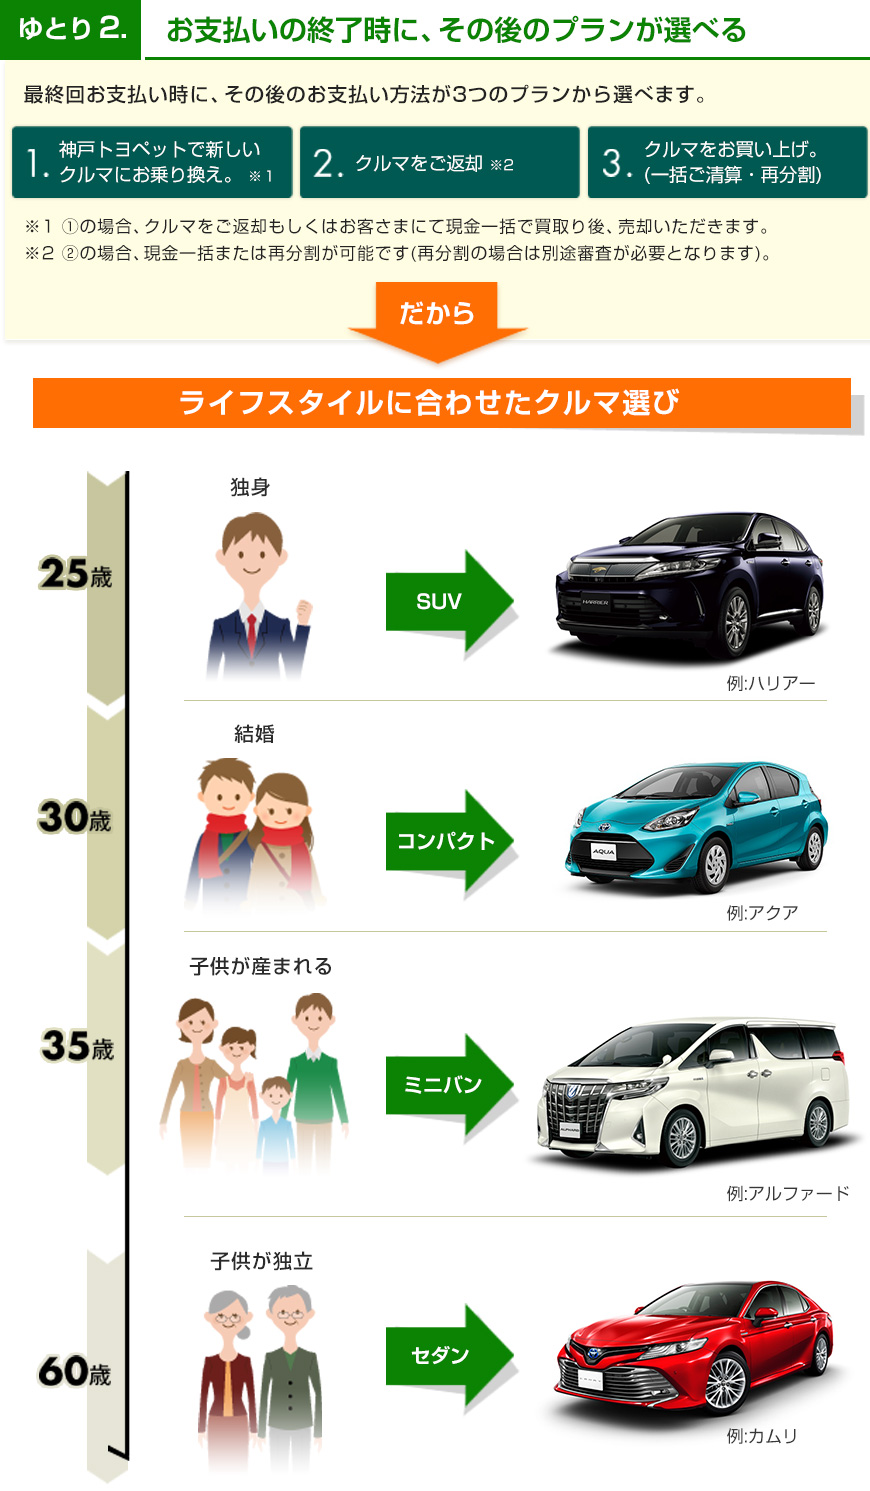 残価設定型割賦 U Carゆとりプラン 中古車情報 トヨタ車なら神戸トヨペット